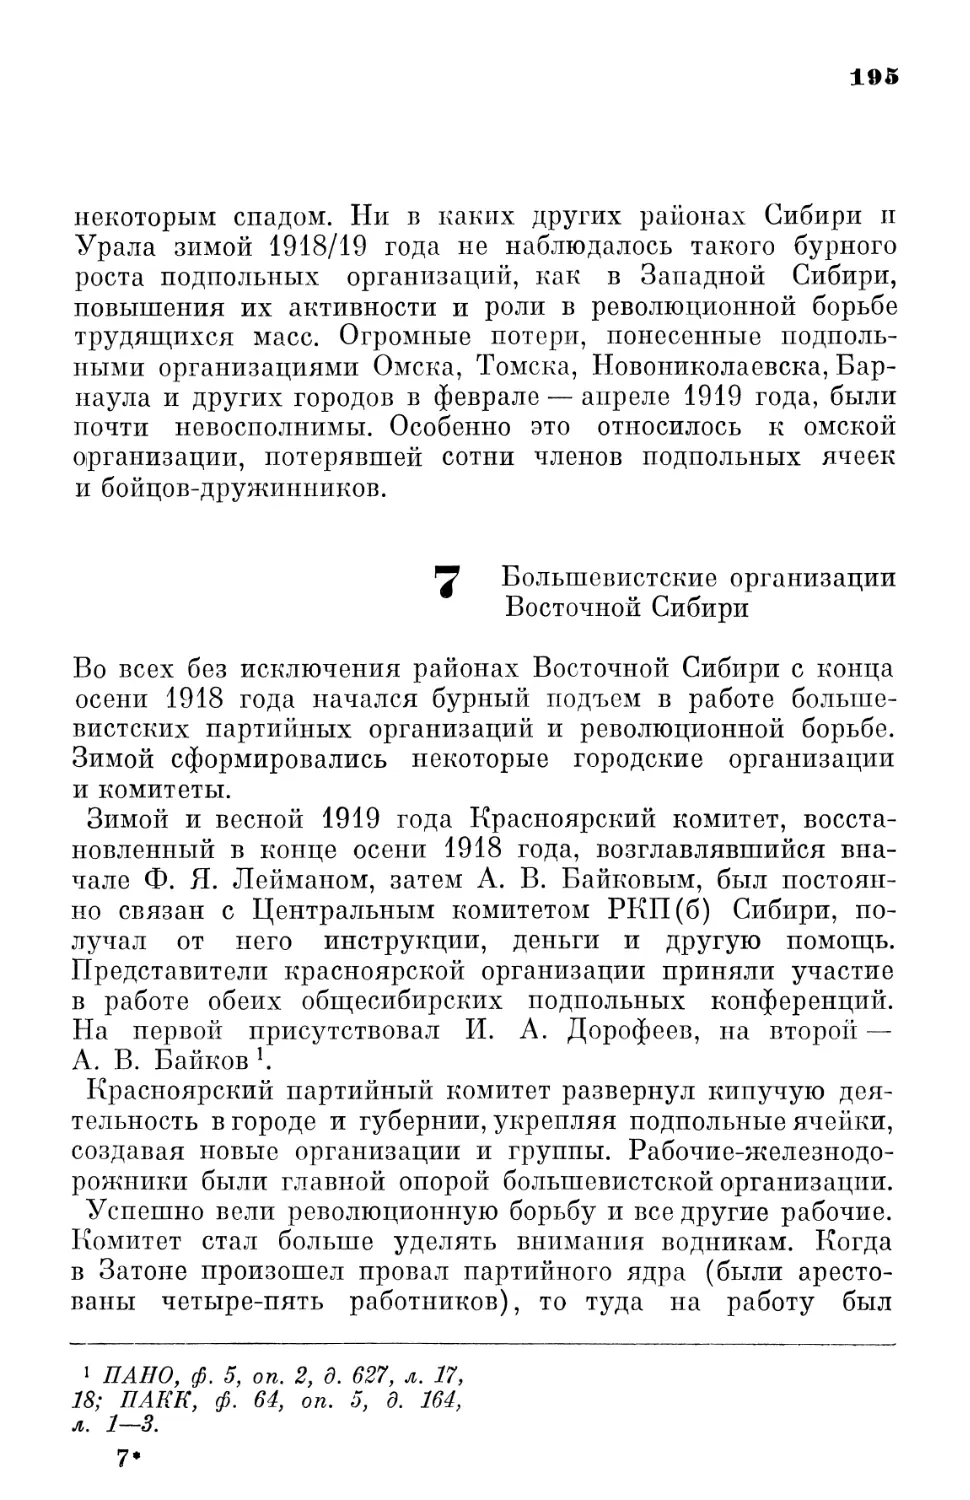 7. Большевистские  организации  Восточной  Сибири